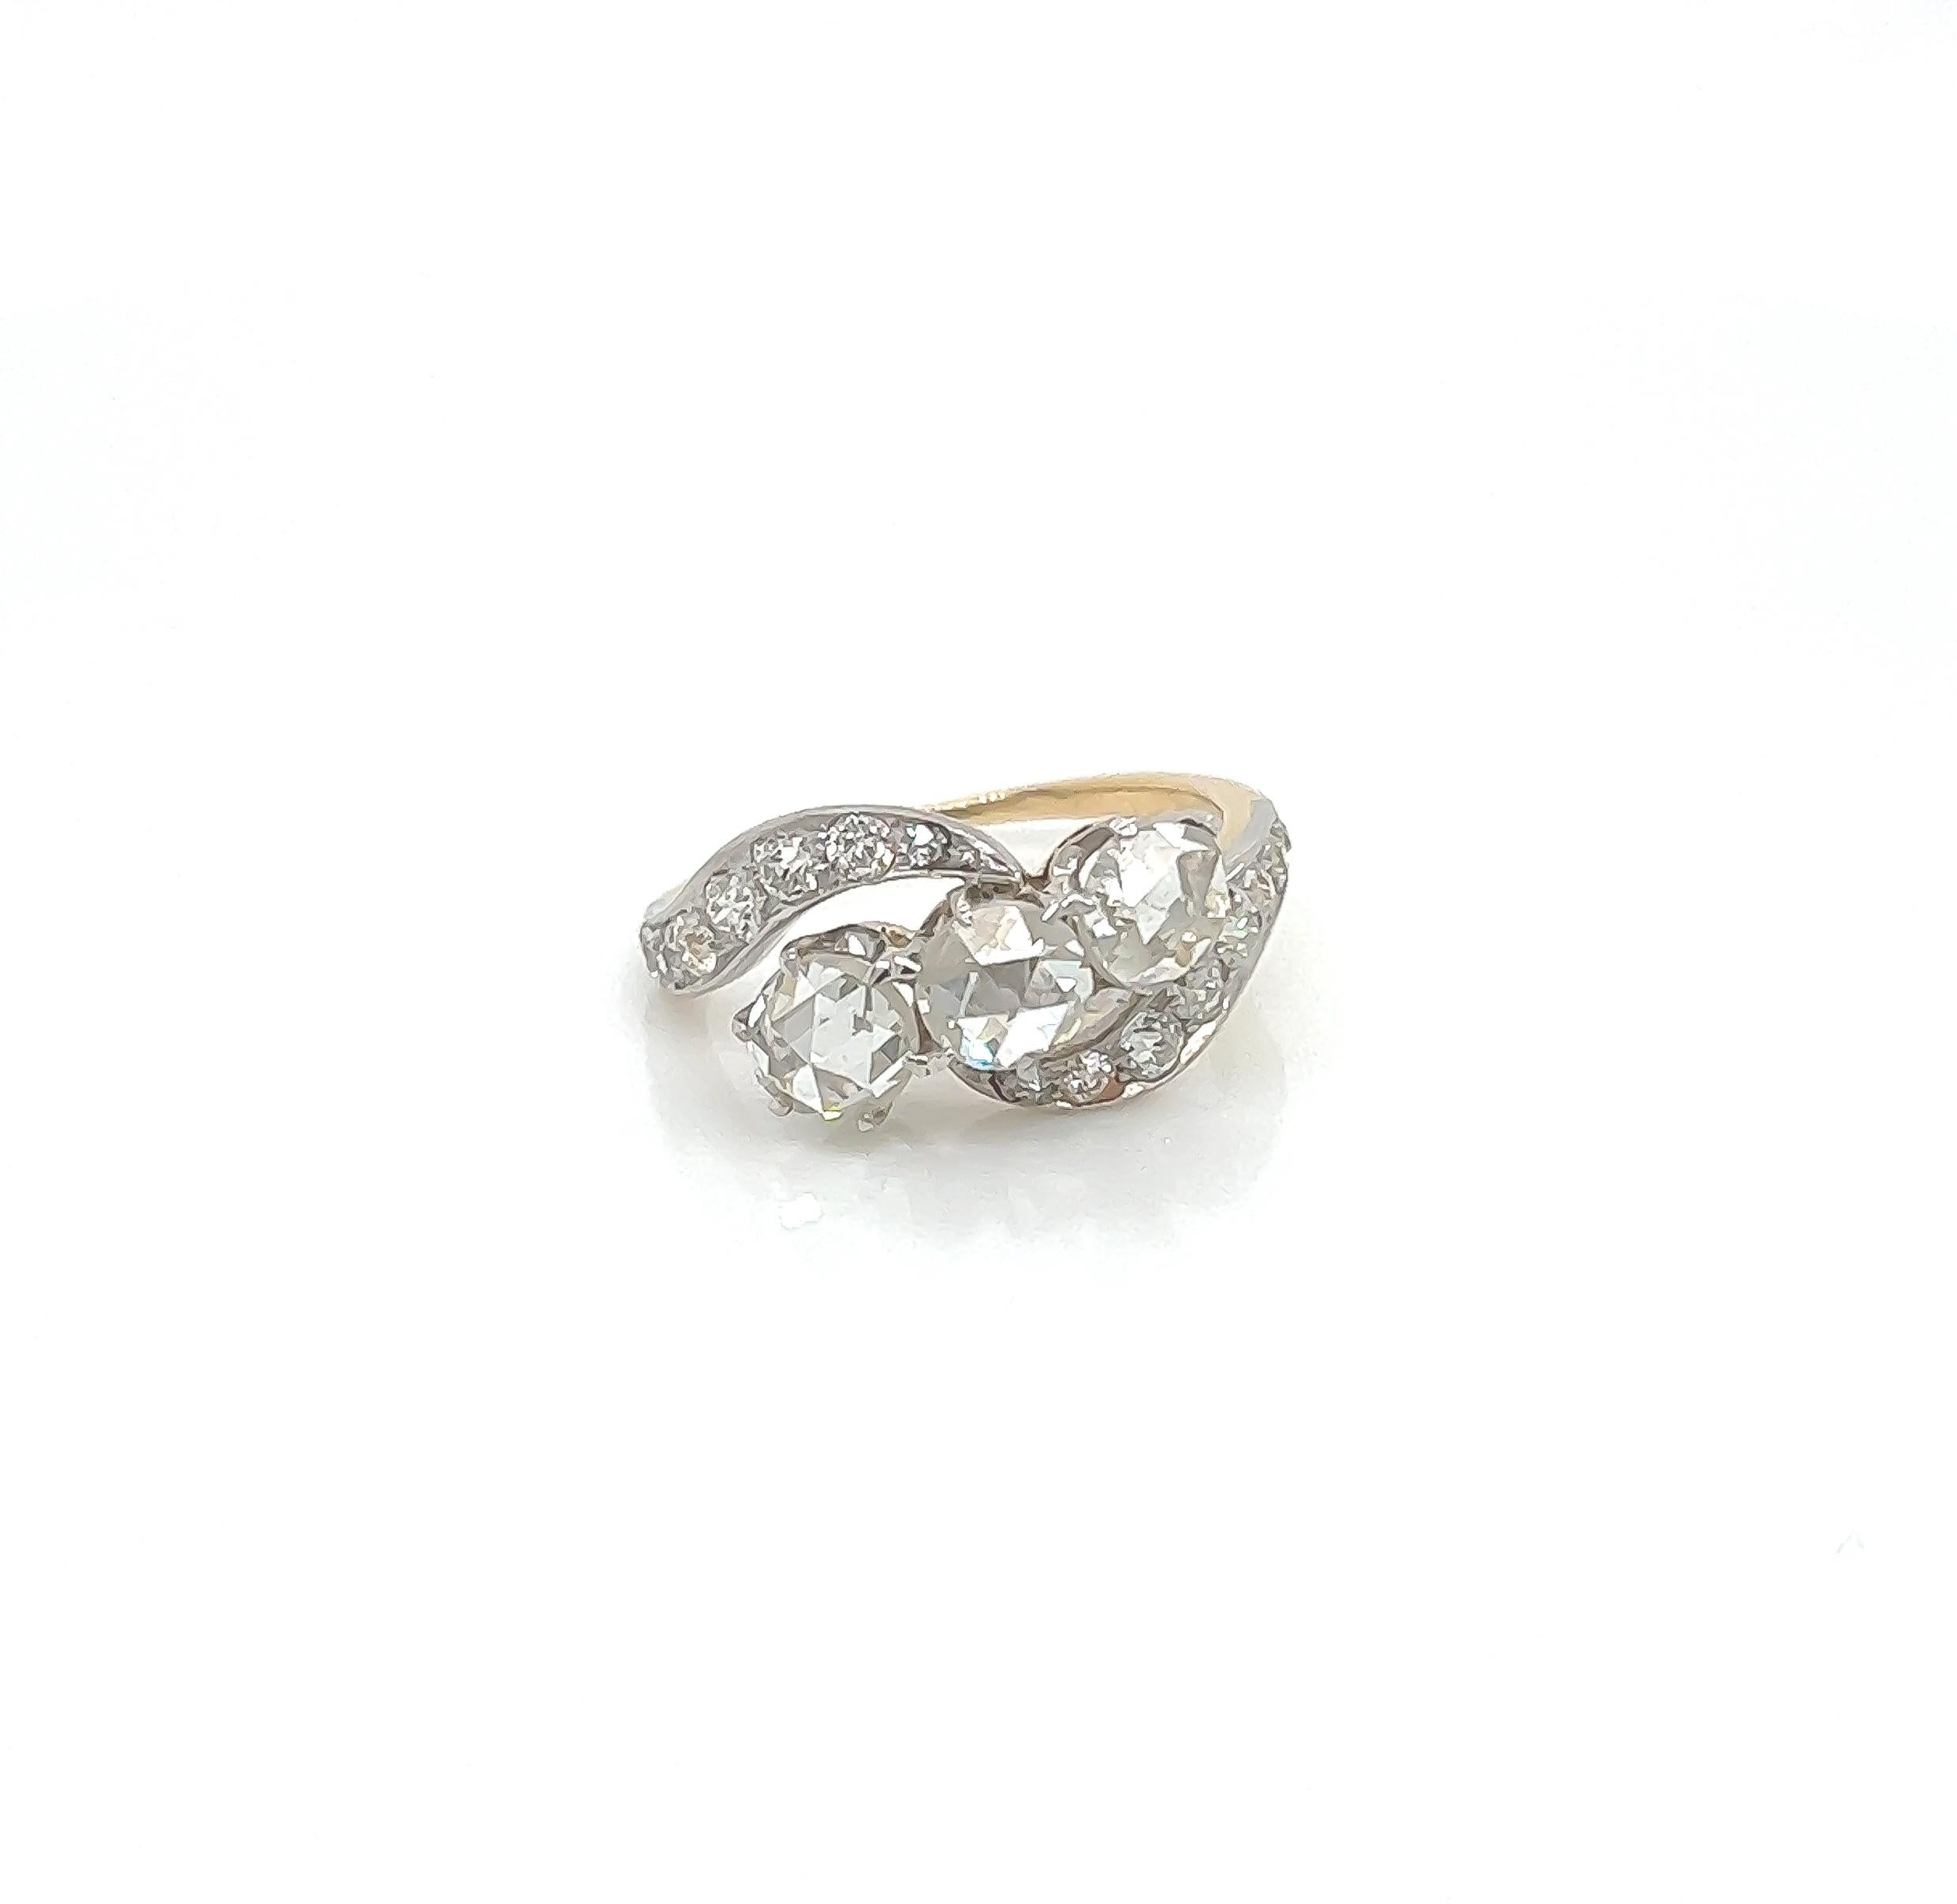 2.10 Gesamtkarat Dreistein-Ring aus Gold mit Pave-Diamanten

Der Ring ist eine klassische Vintage-Schönheit aus den Roaring 20s. In der Mitte befinden sich drei seltene Diamanten im Rosenschliff. Die Hauptsteine sind von kleineren Diamanten in